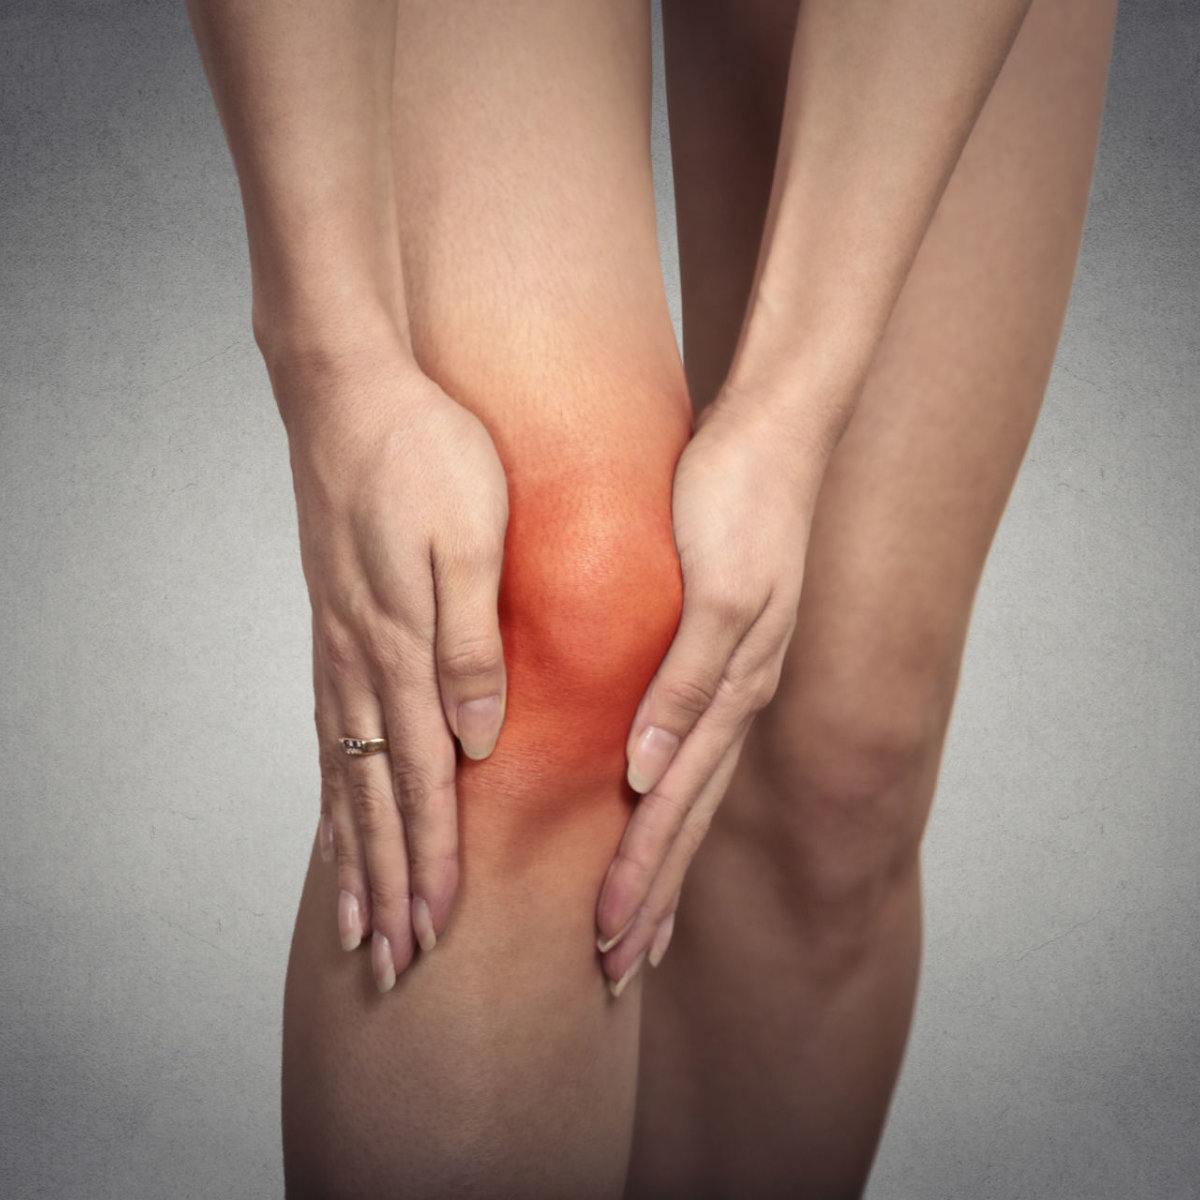 įrašas sindromas ligų sąnarių gydymas artrozė kojų liaudies gynimo priemones